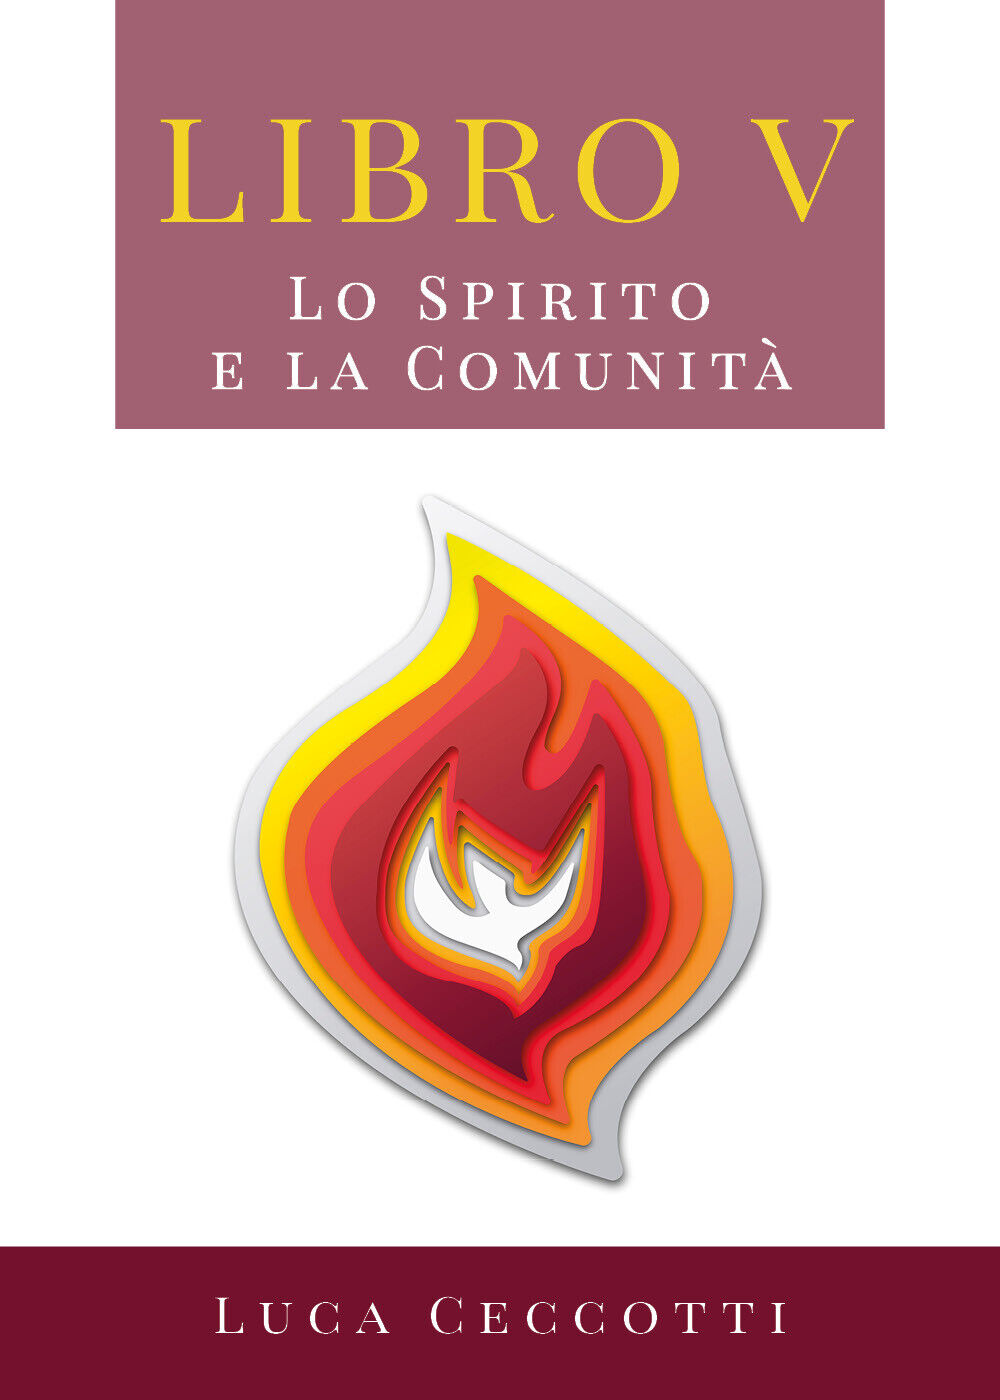 Libro V. Lo Spirito e la Comunit?  di Luca Ceccotti,  2019,  Youcanprint